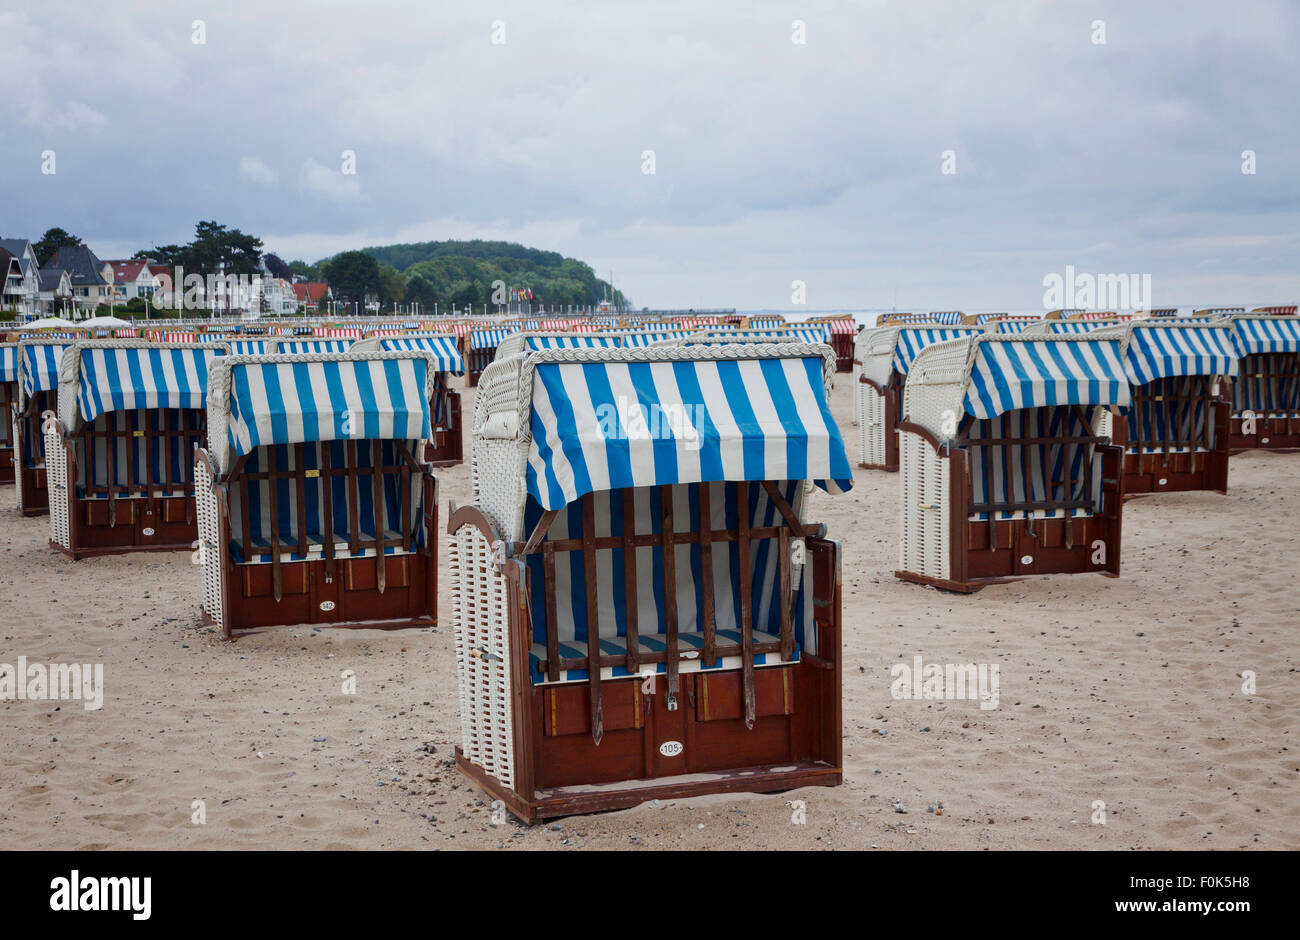 Chaises de plage à capuchon (strandkorb) à la mer Baltique en Allemagne, Travemunde Banque D'Images